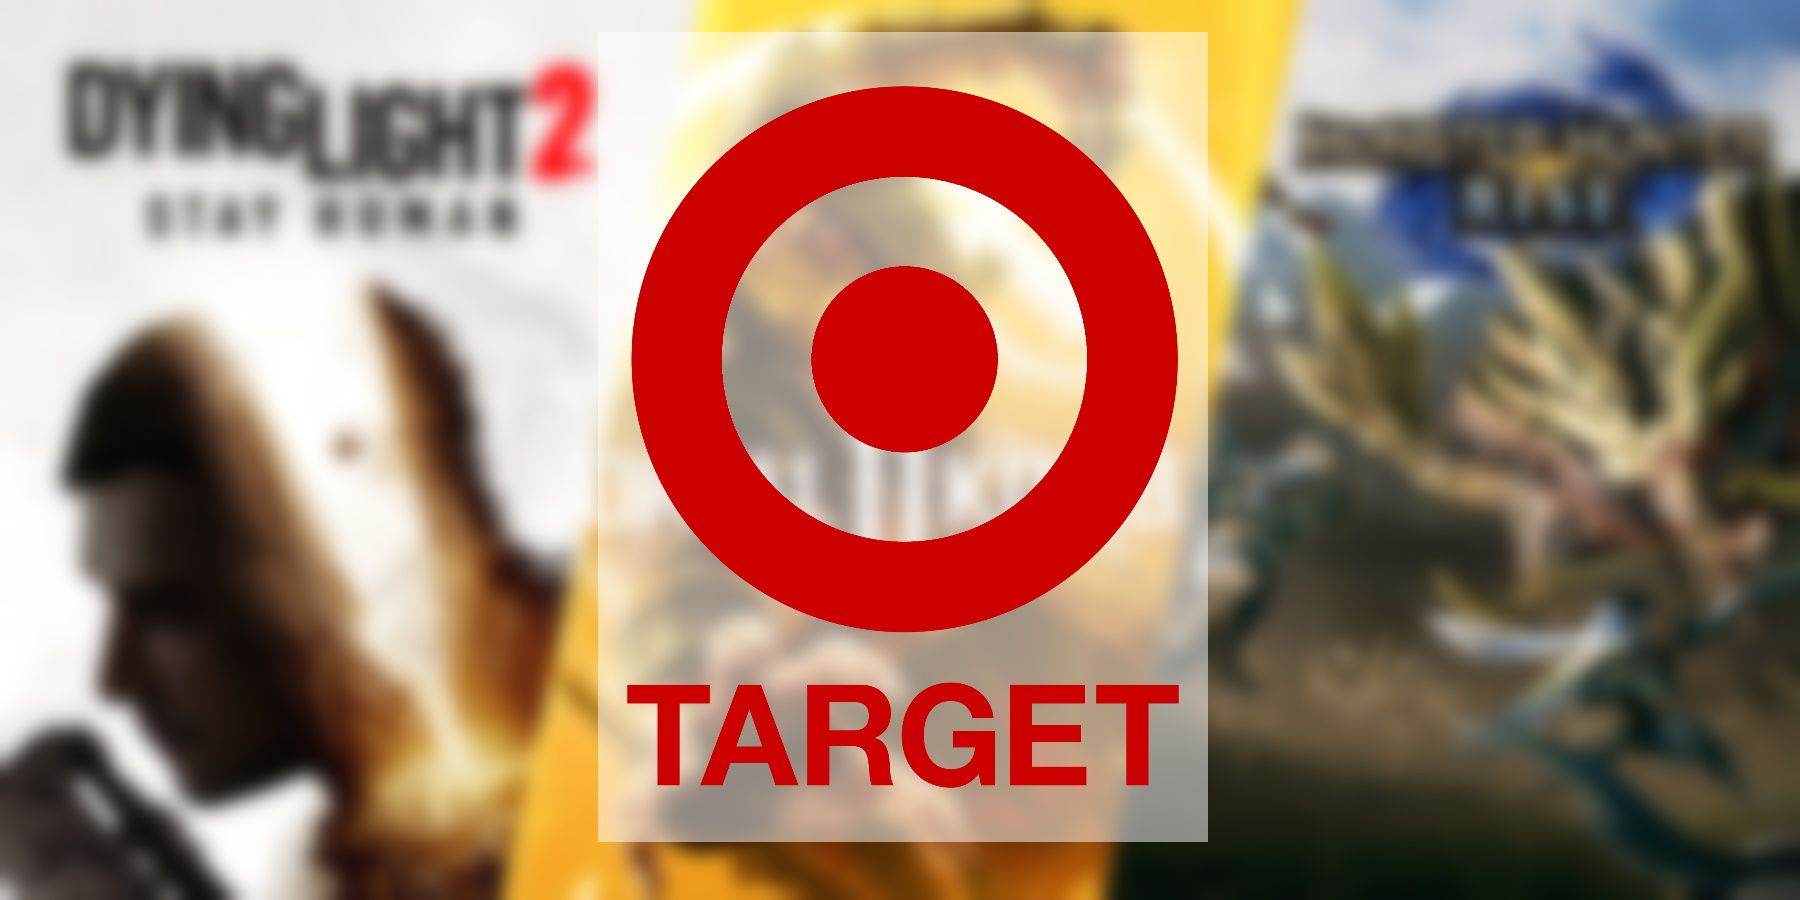 Target Running Buy 2 Få 1 gratis avtale for videospill